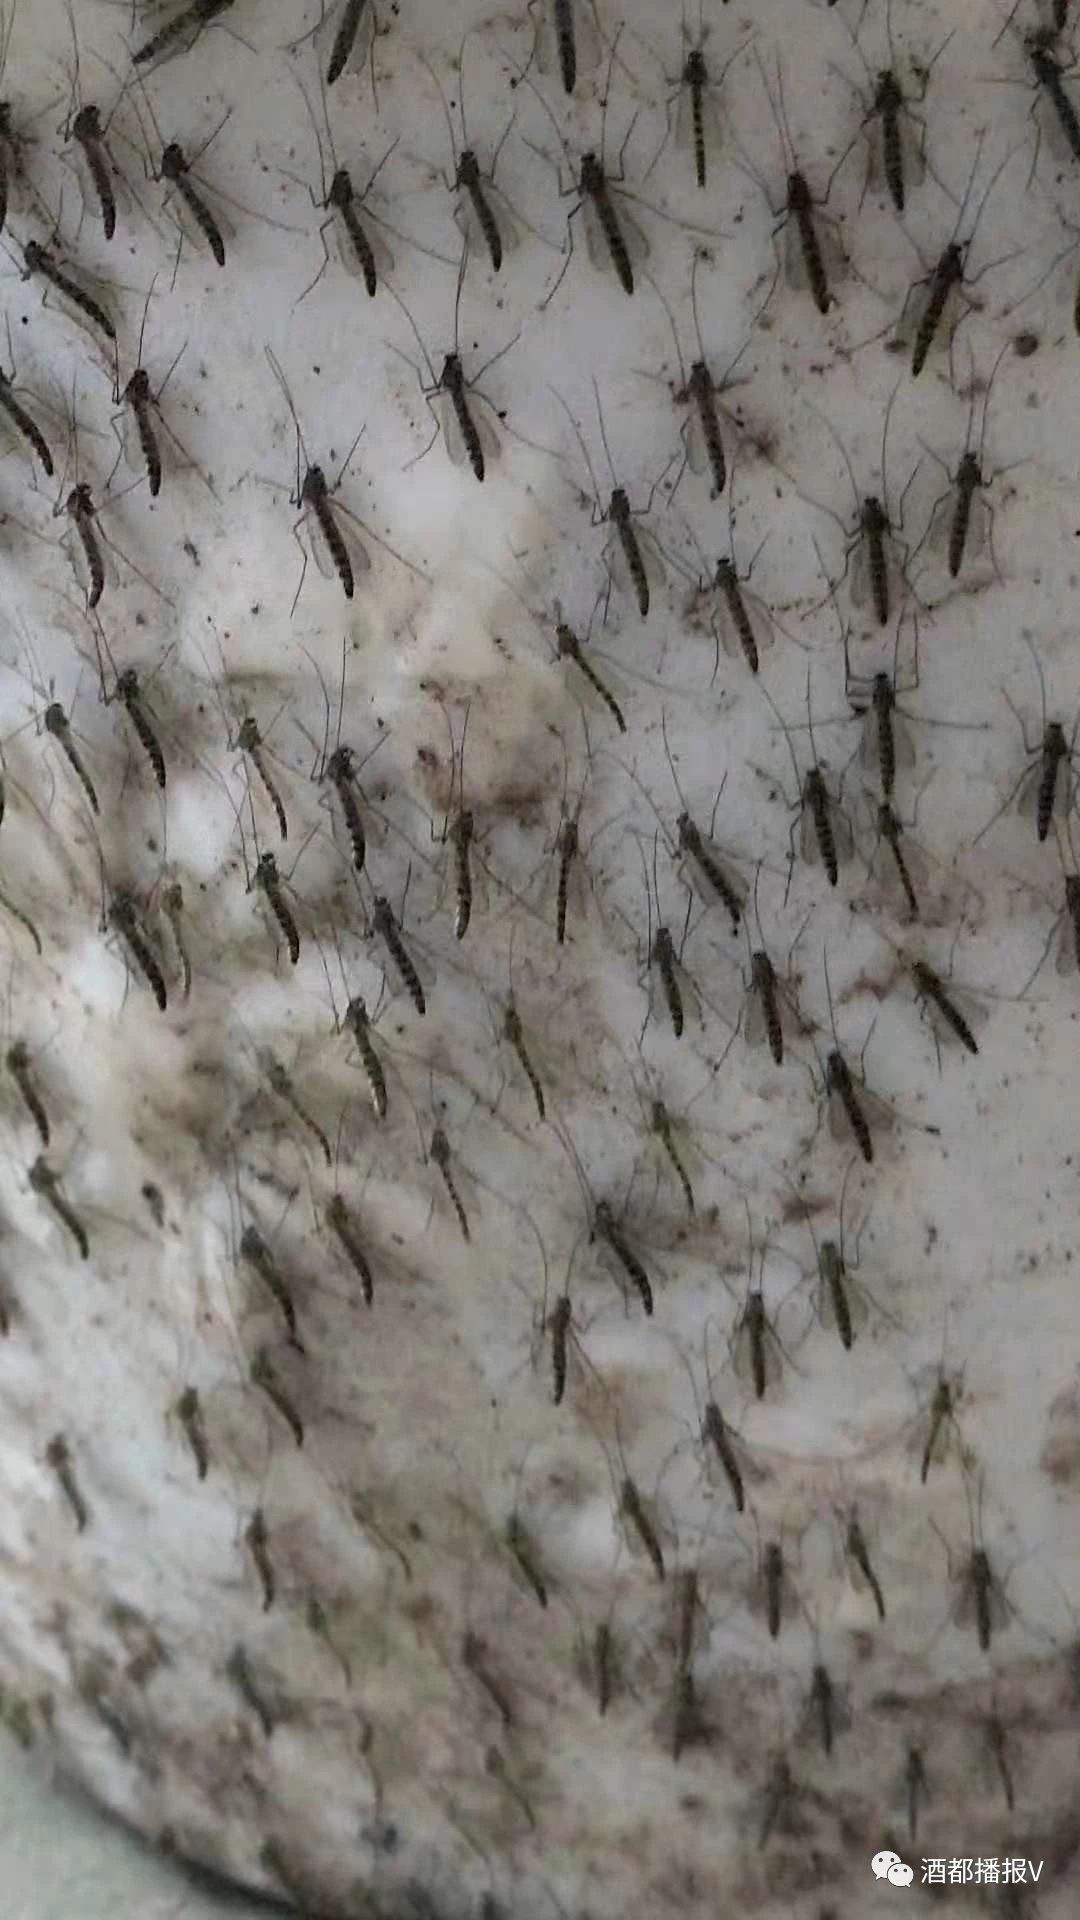 宜宾一条河边发现大量蚊子,密密麻麻的铺在墙上,太恶心了!